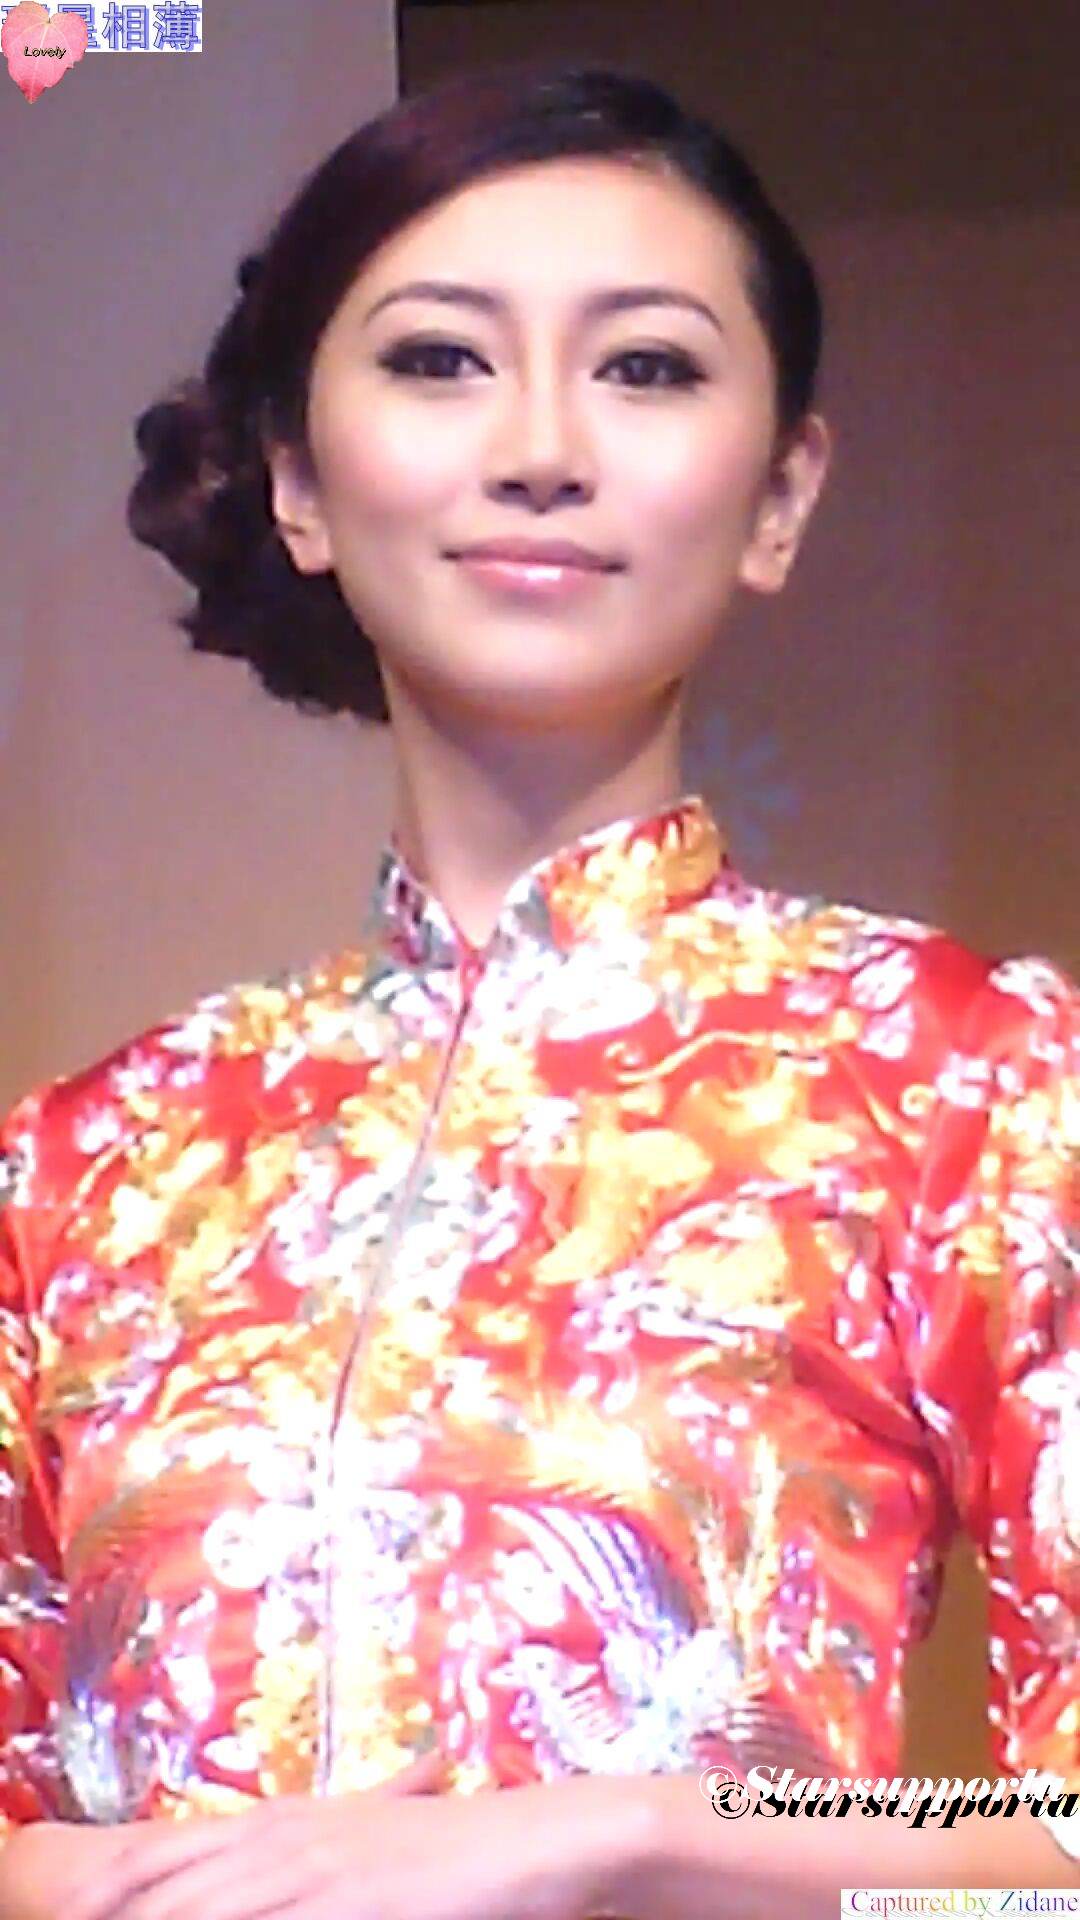 20110925 7th Hong Kong Wedding Showcase - 鴻運繡莊: 鴻運繡莊裙褂大匯演 @ 香港Emax (video)